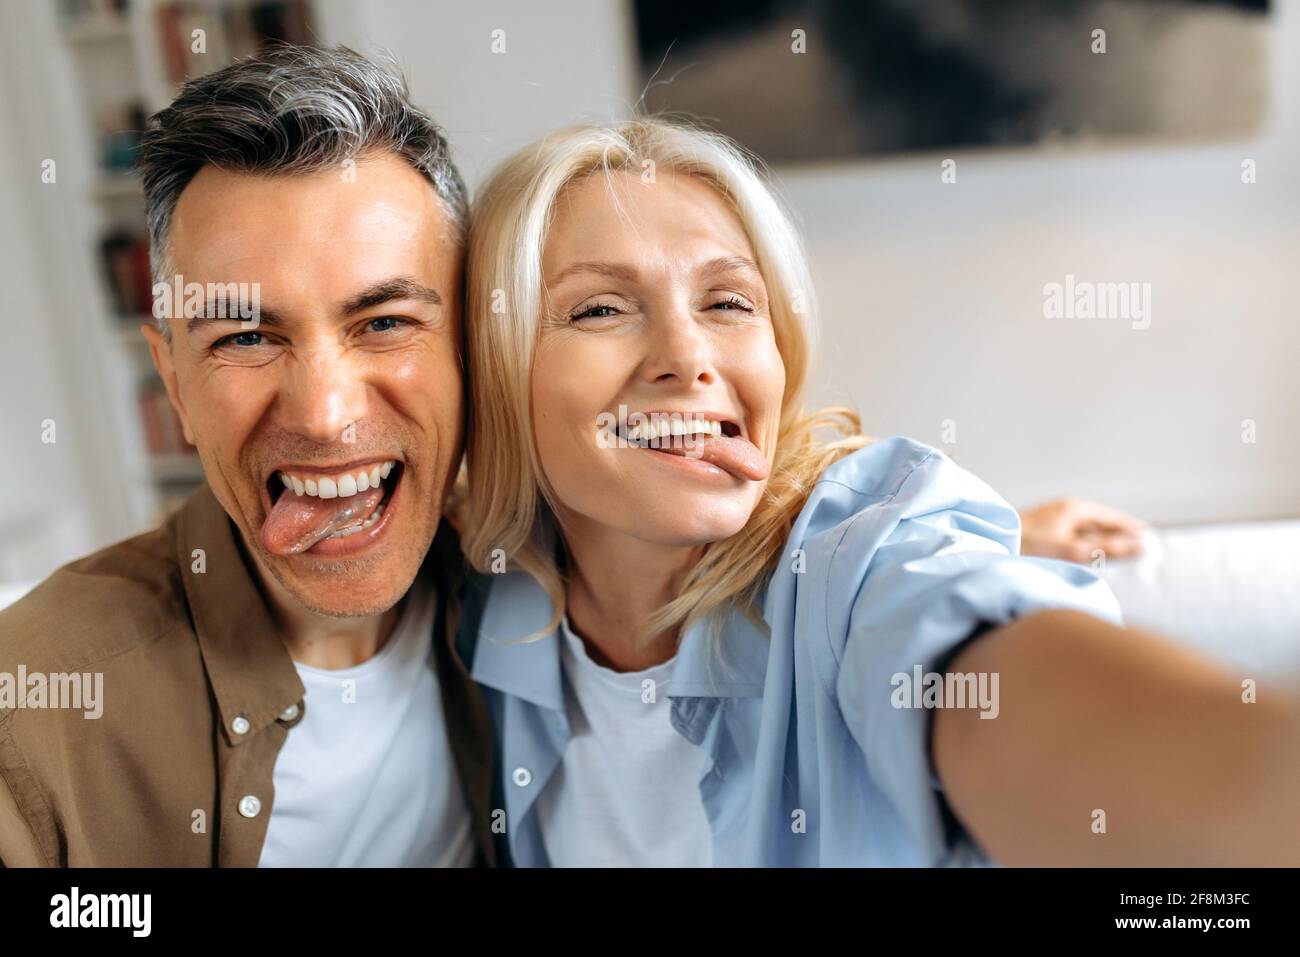 Coppia matura sposata divertente, marito caucasico di mezza età e moglie che si aggirano intorno, prendendo un selfie sugli smartphone, mostrando le loro lingue, facendo i volti, divertendosi insieme Foto Stock